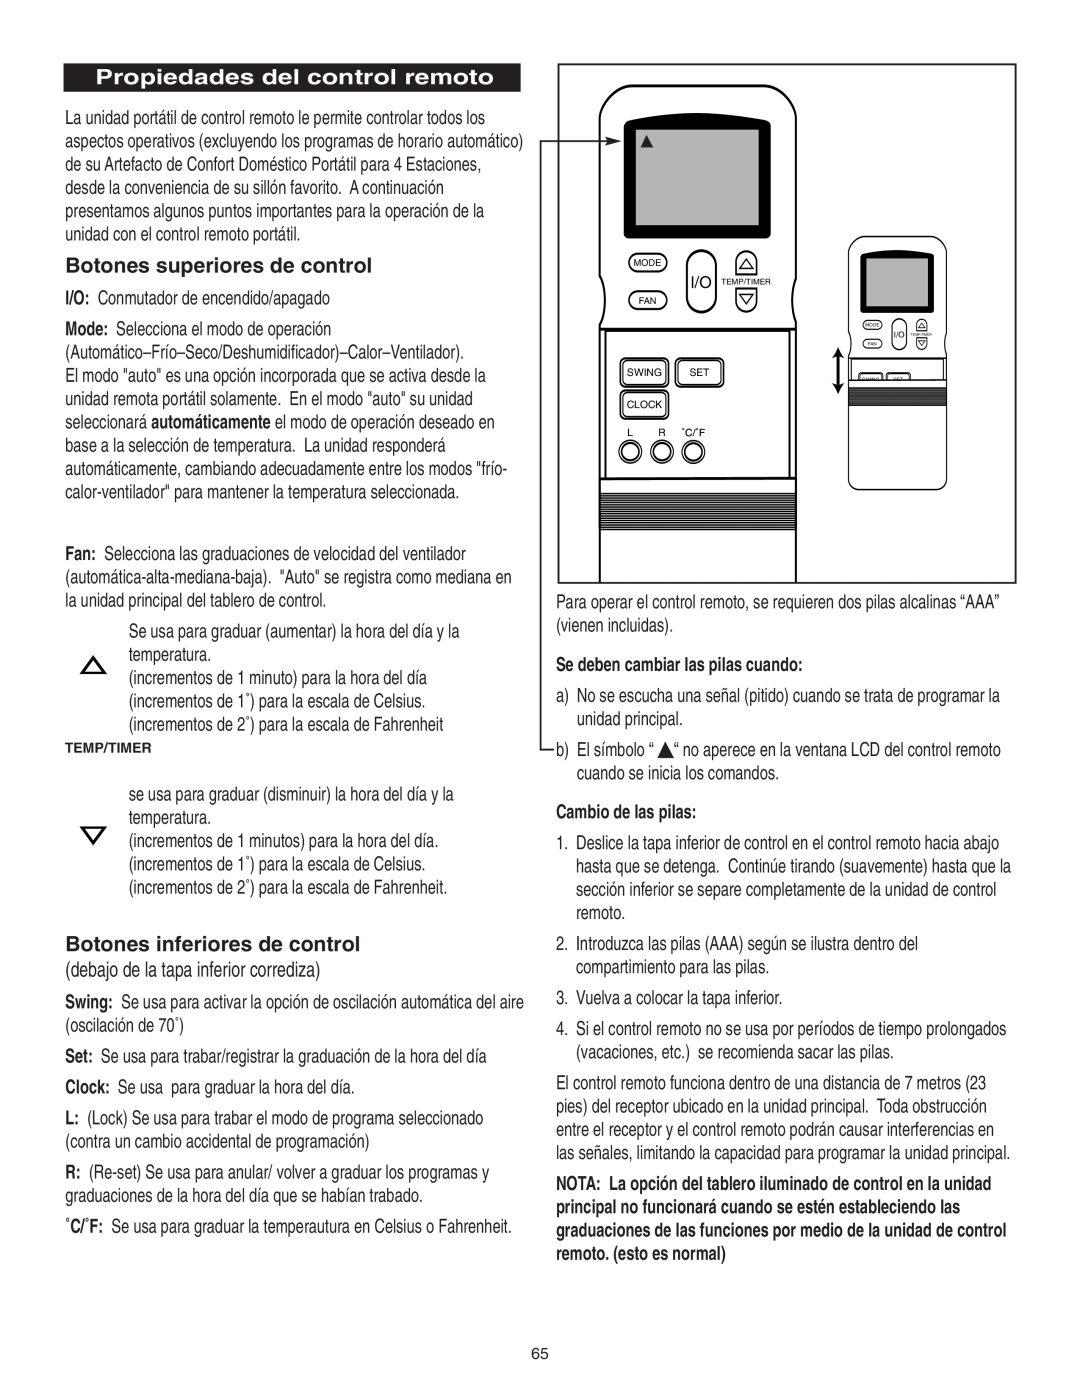 Danby SPAC8499 manual Propiedades del control remoto, Botones superiores de control, Botones inferiores de control 